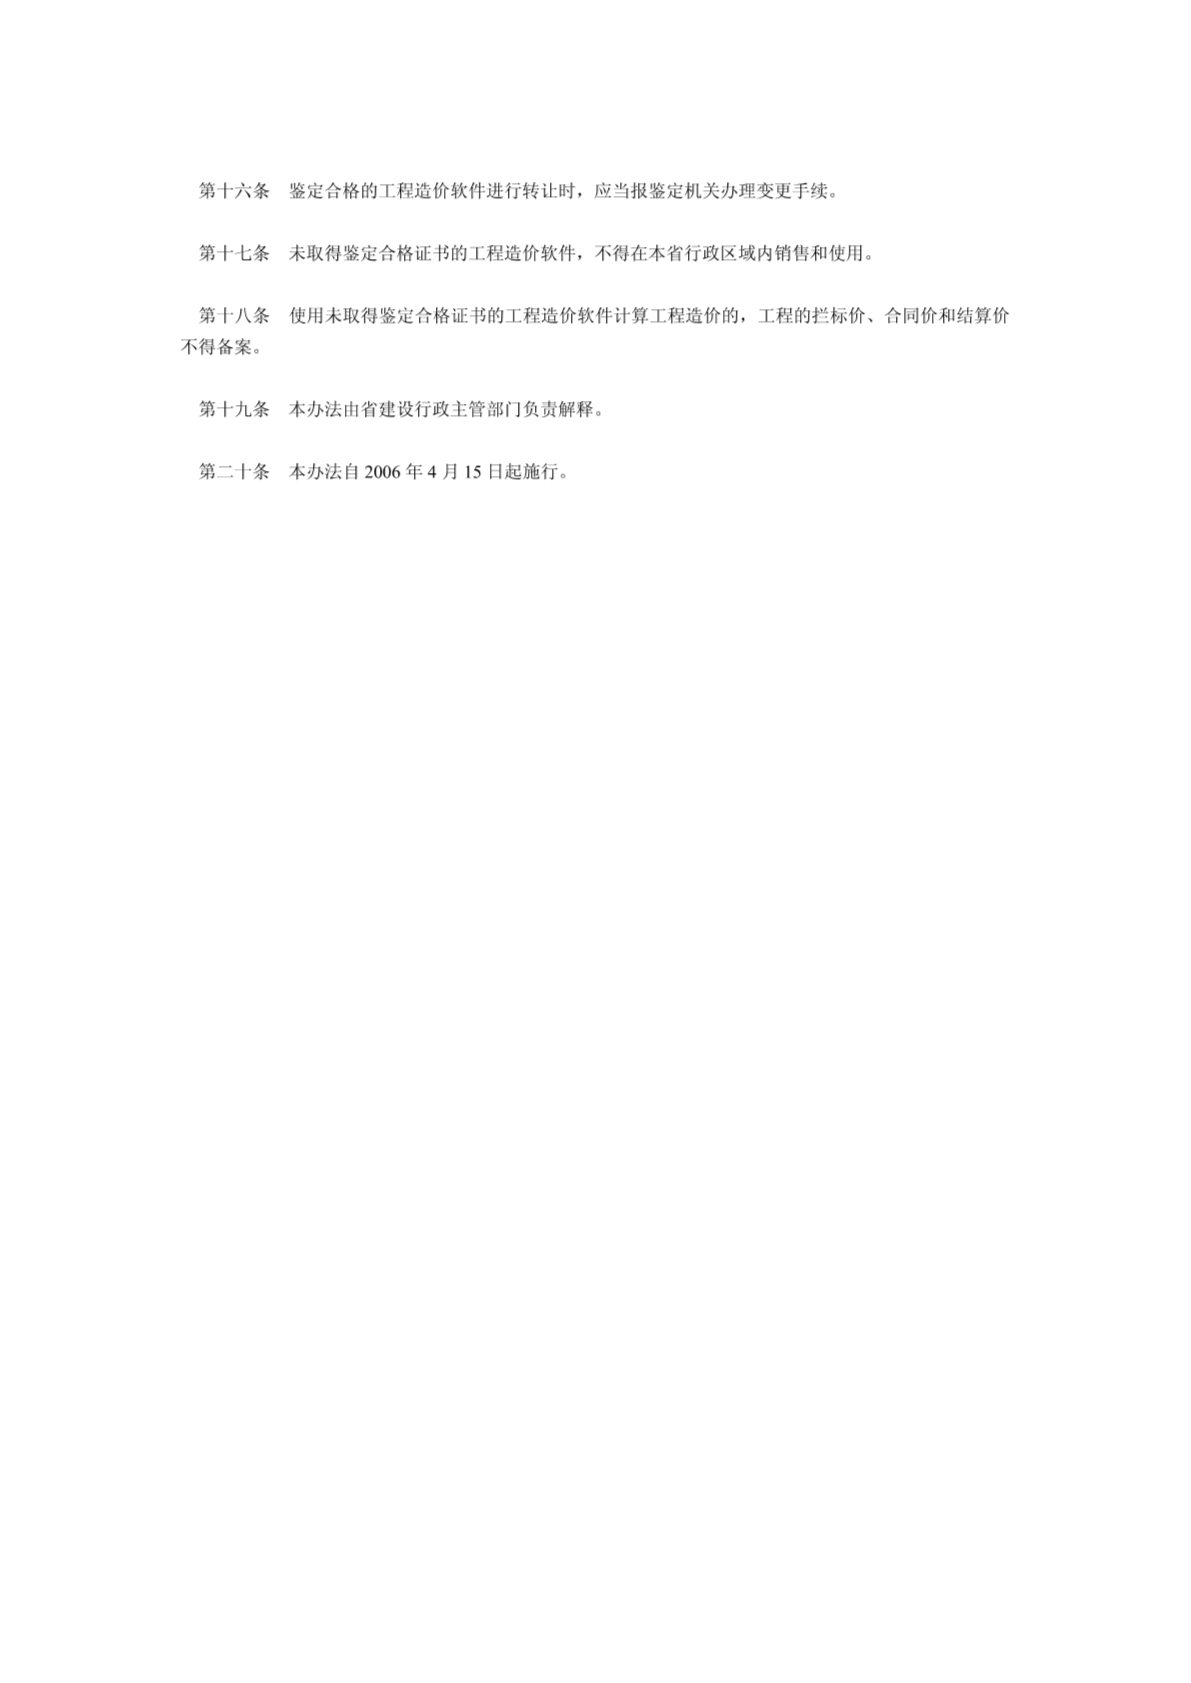 云南省建设工程造价计算机软件管理办法公告-图一